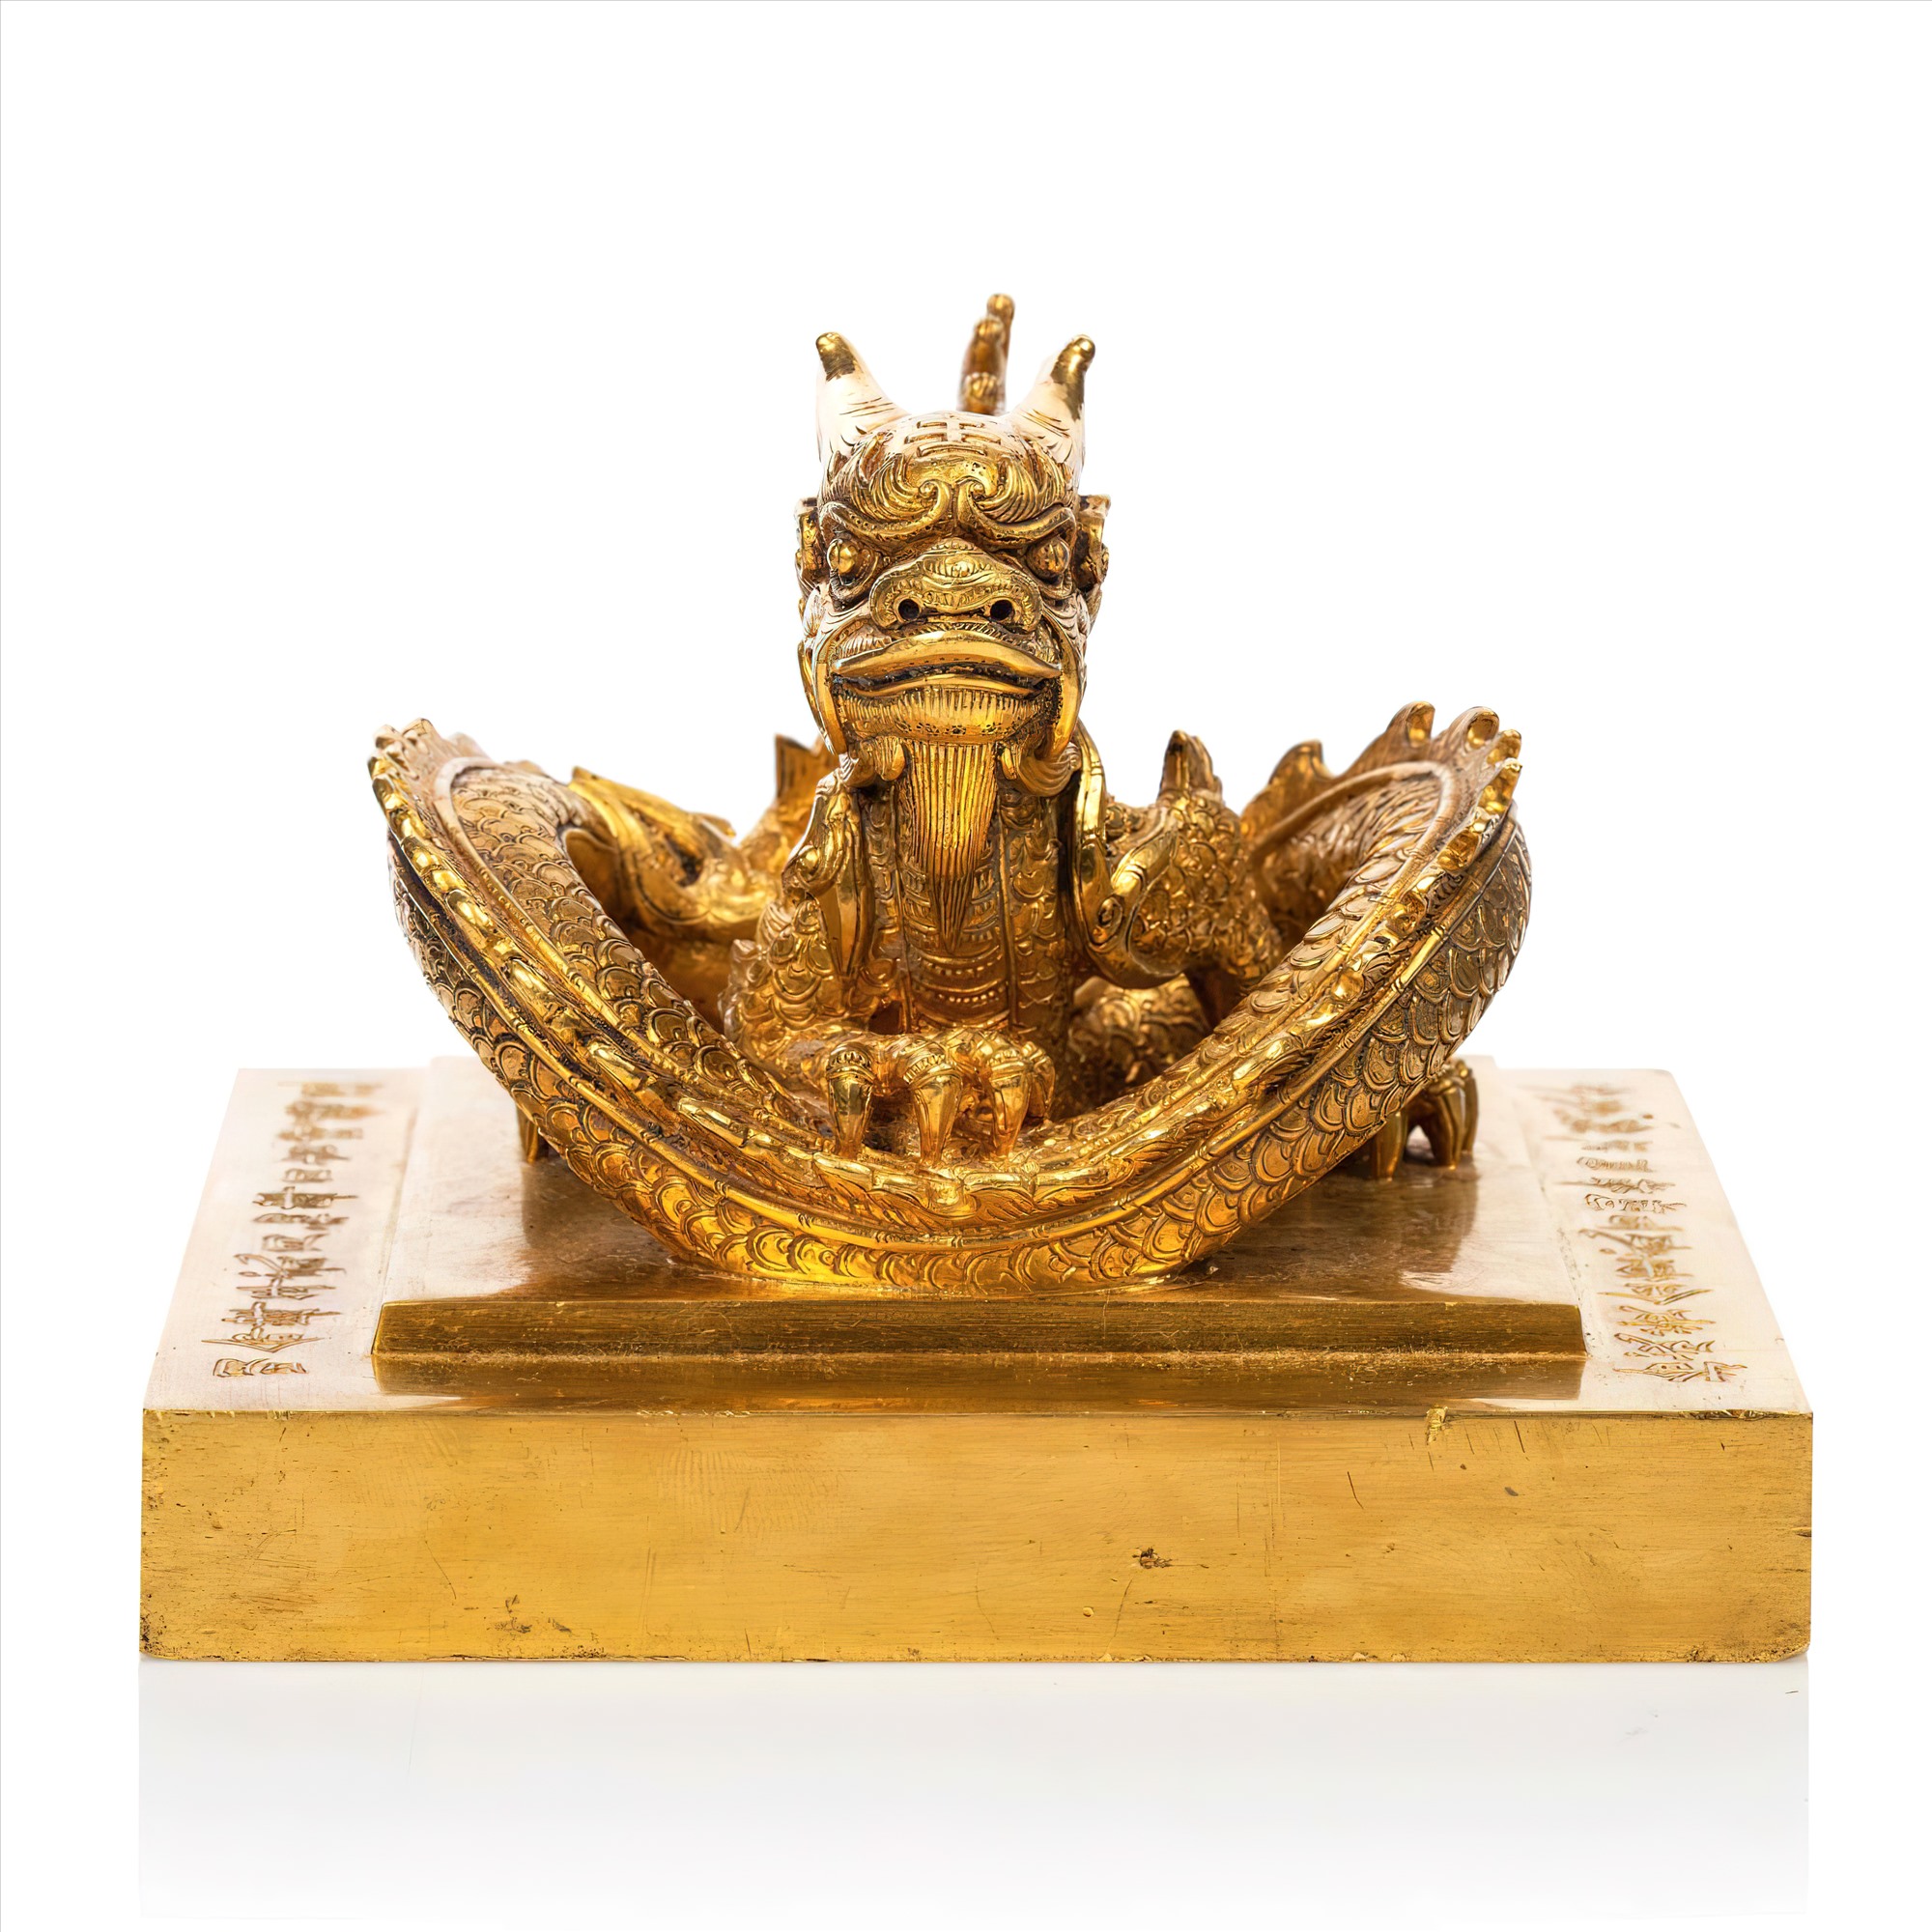 Kim bảo tỷ bằng vàng ròng của vua Minh Mạng nặng 10,7 kg được Nhà đấu giá Pháp ước giá 2-3 triệu Euro